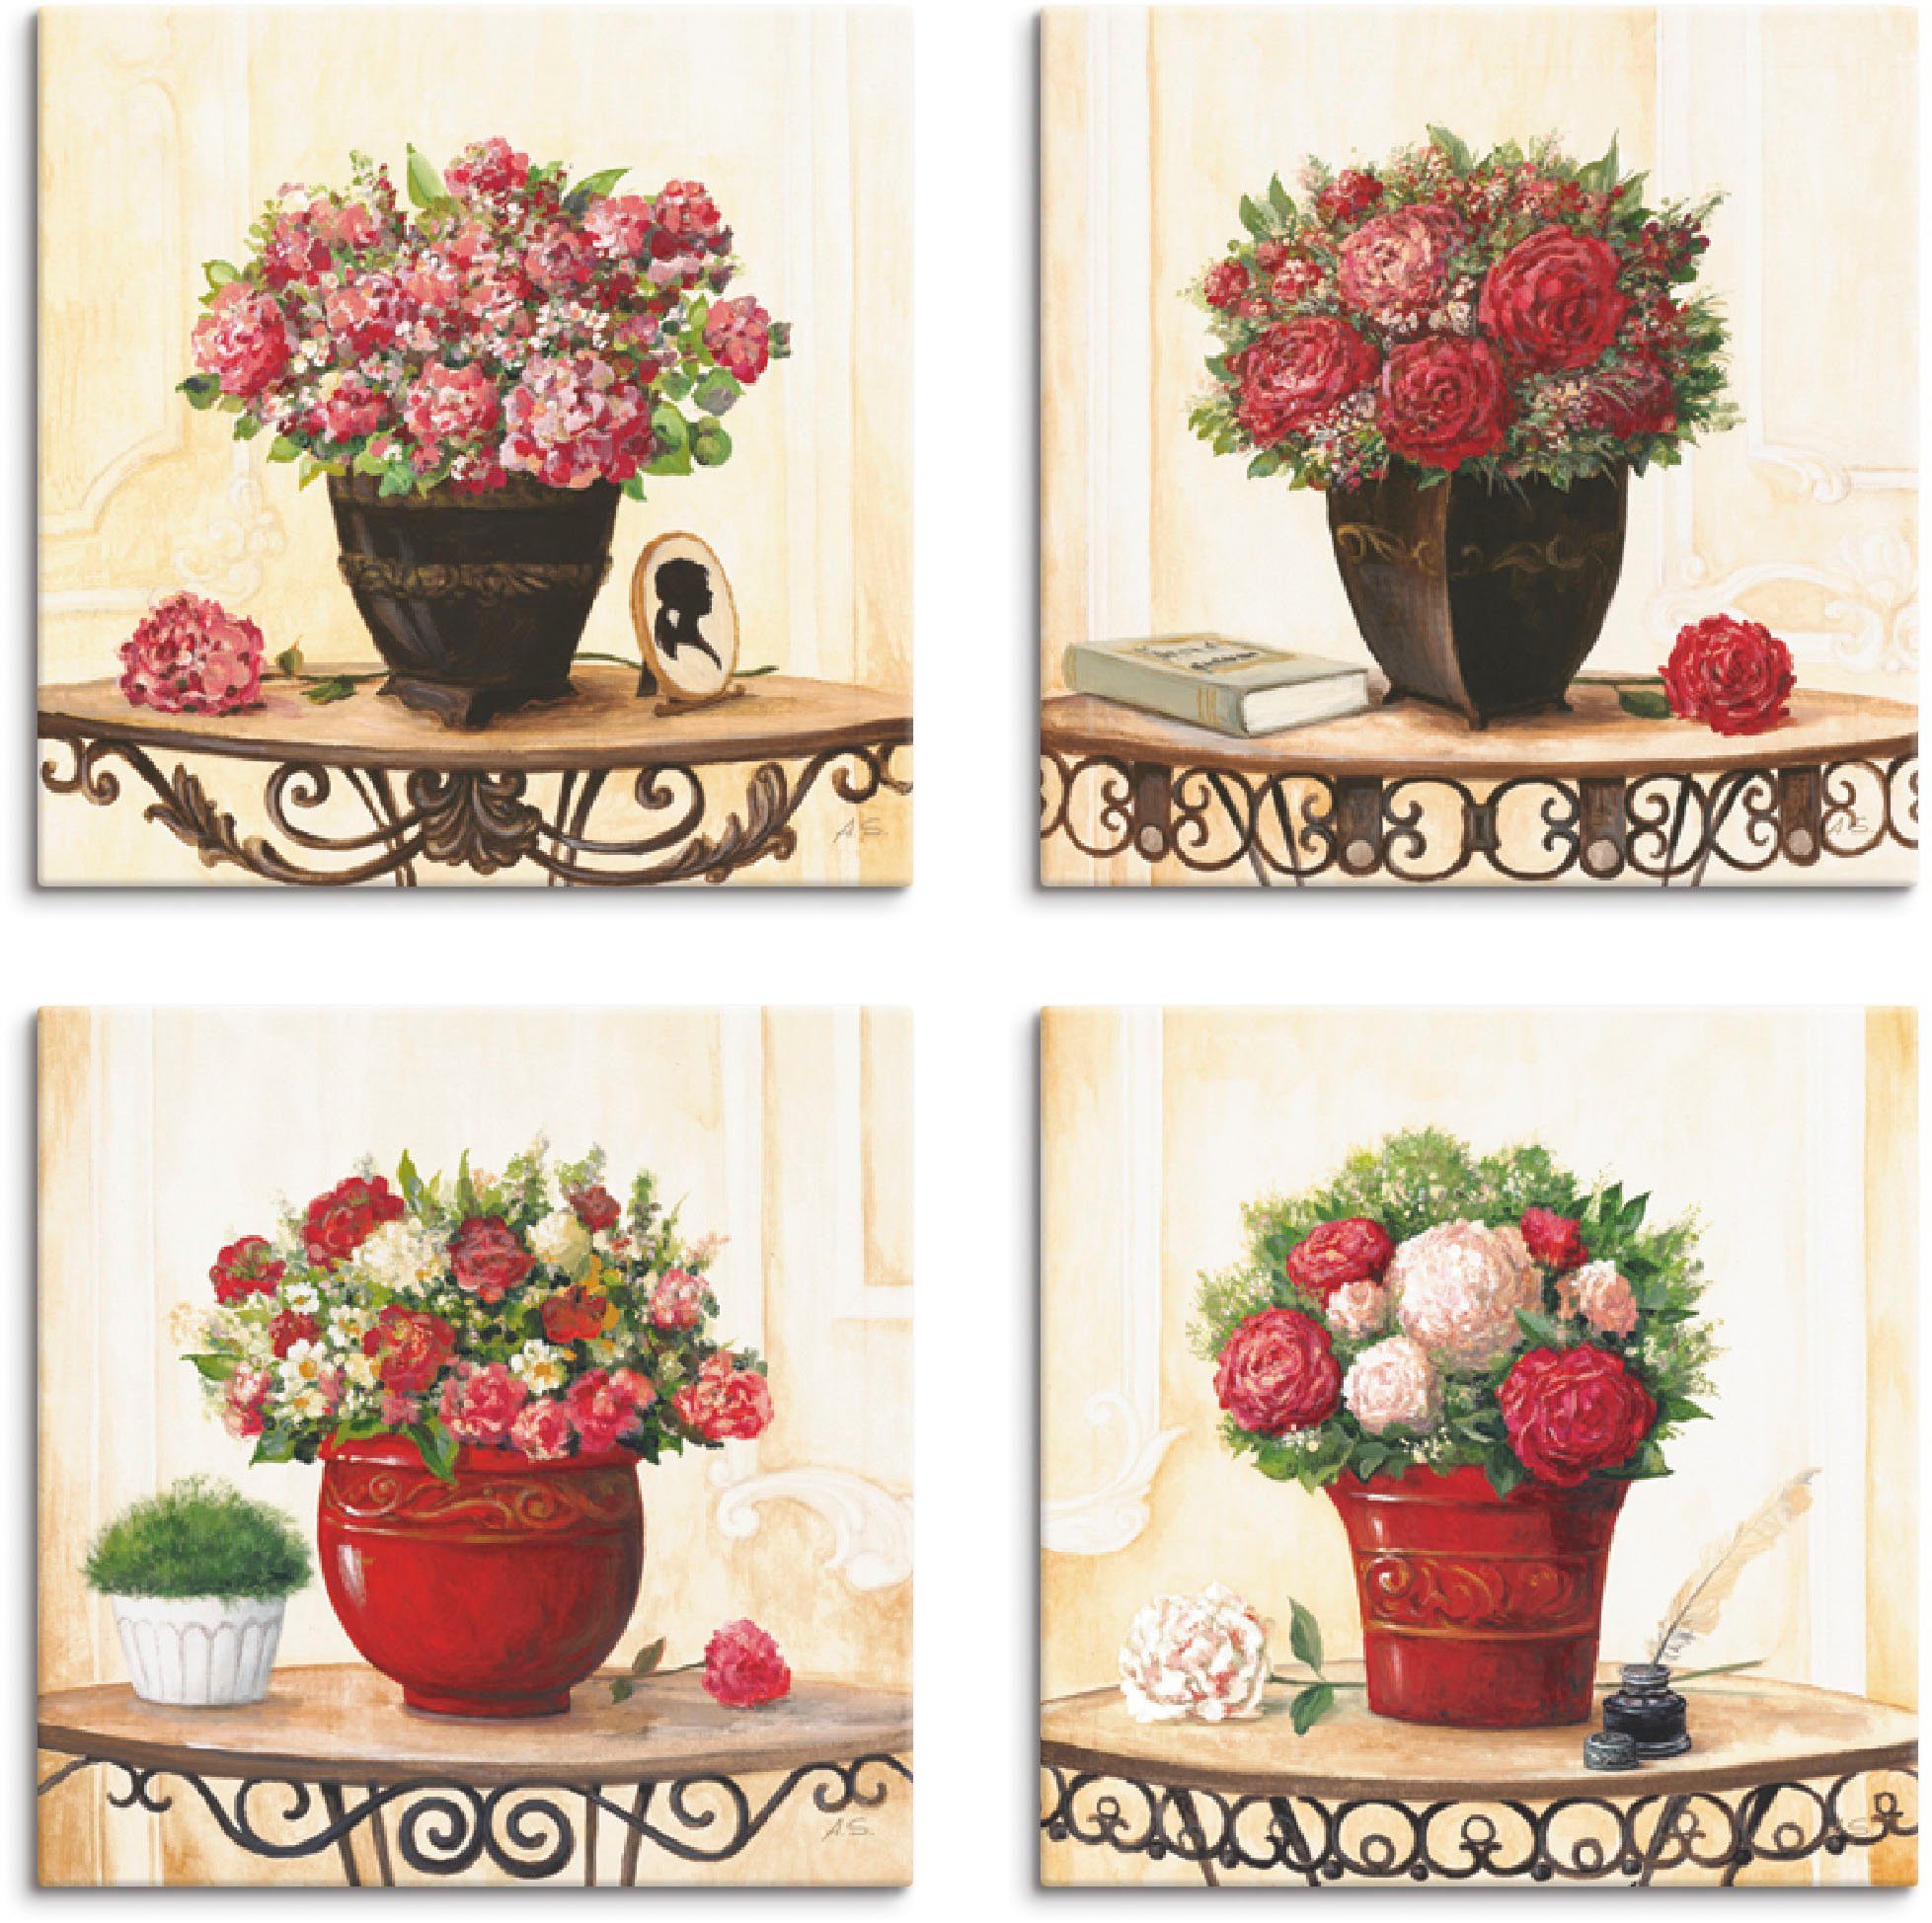 Artland Artprint op linnen Hortensia's kruidnagel rozen pioenrozen (4 stuks)